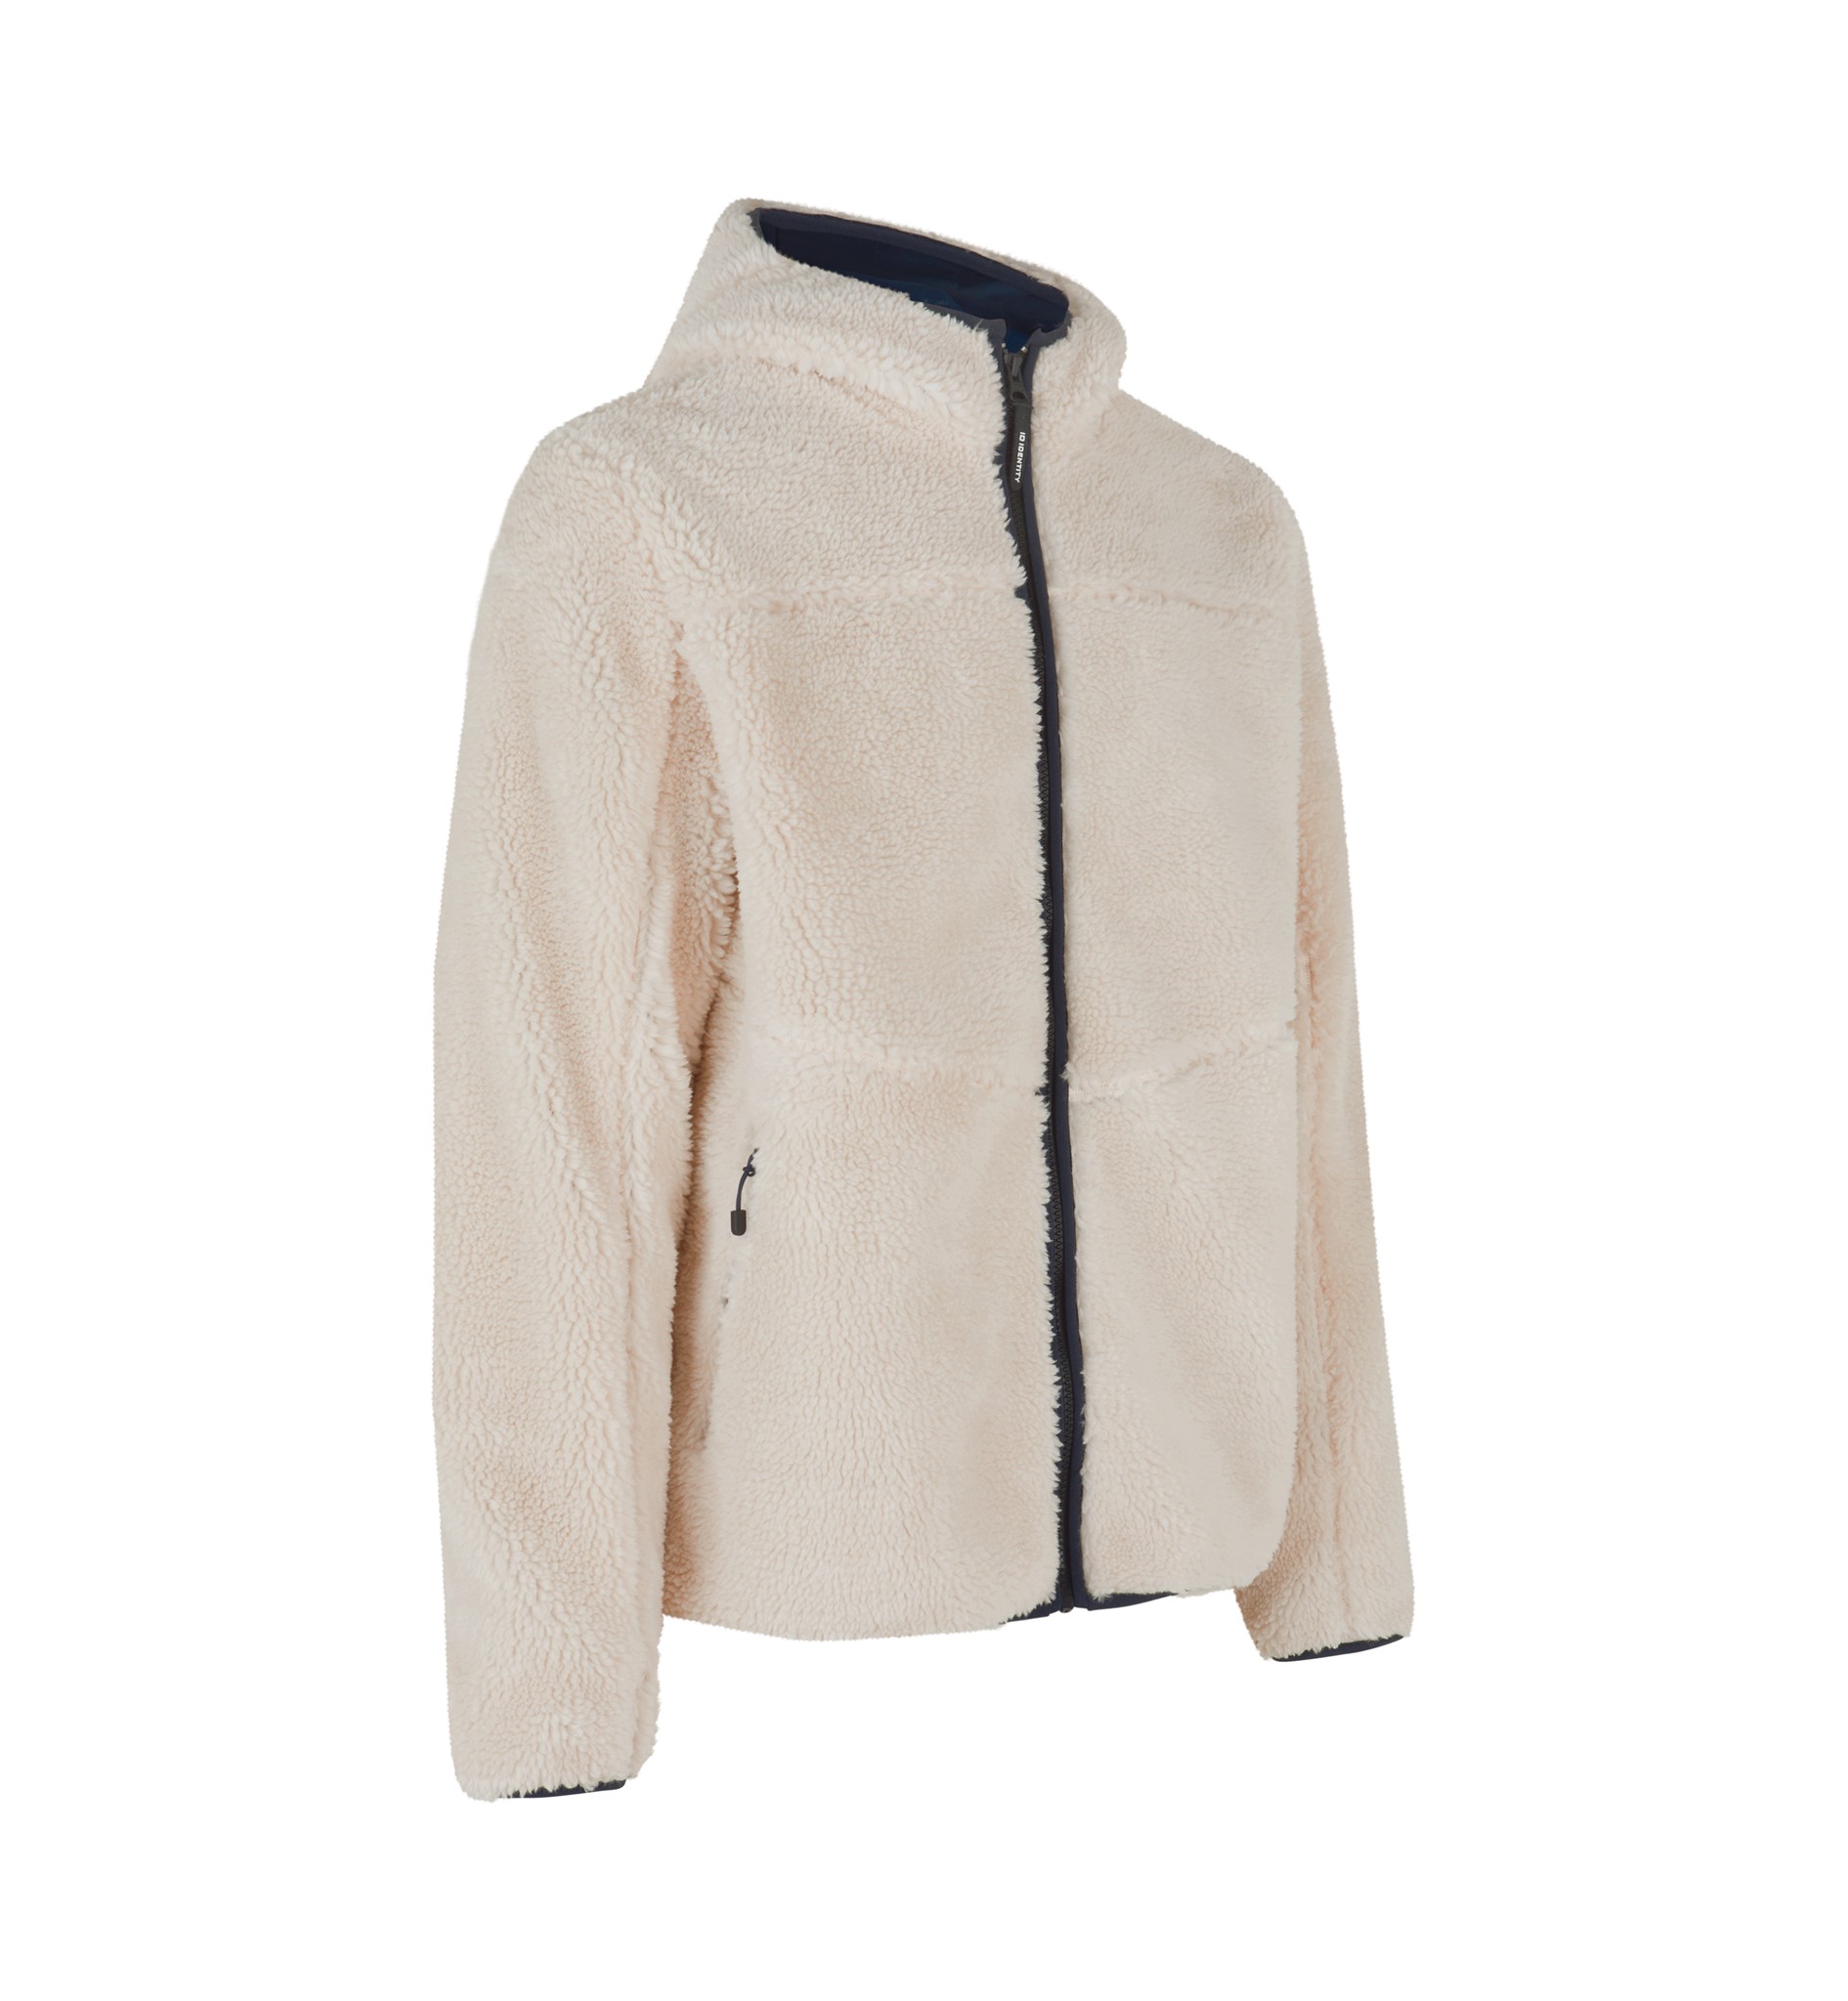 Picture of Men's Pile fleece jacket